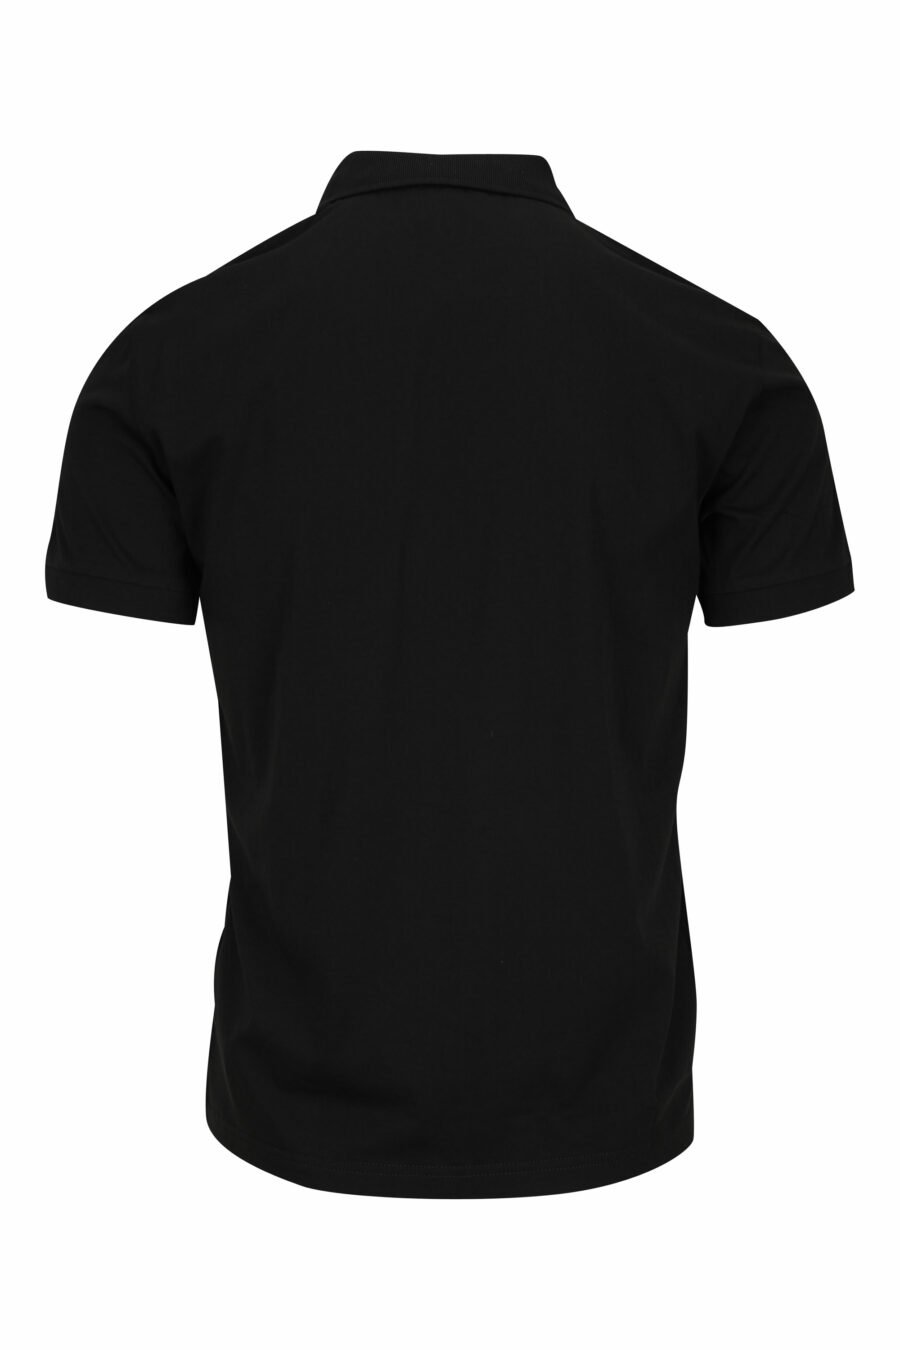 Schwarzes Poloshirt mit "lux identity" Minilogo und gelbem Streifen - 8058947459360 1